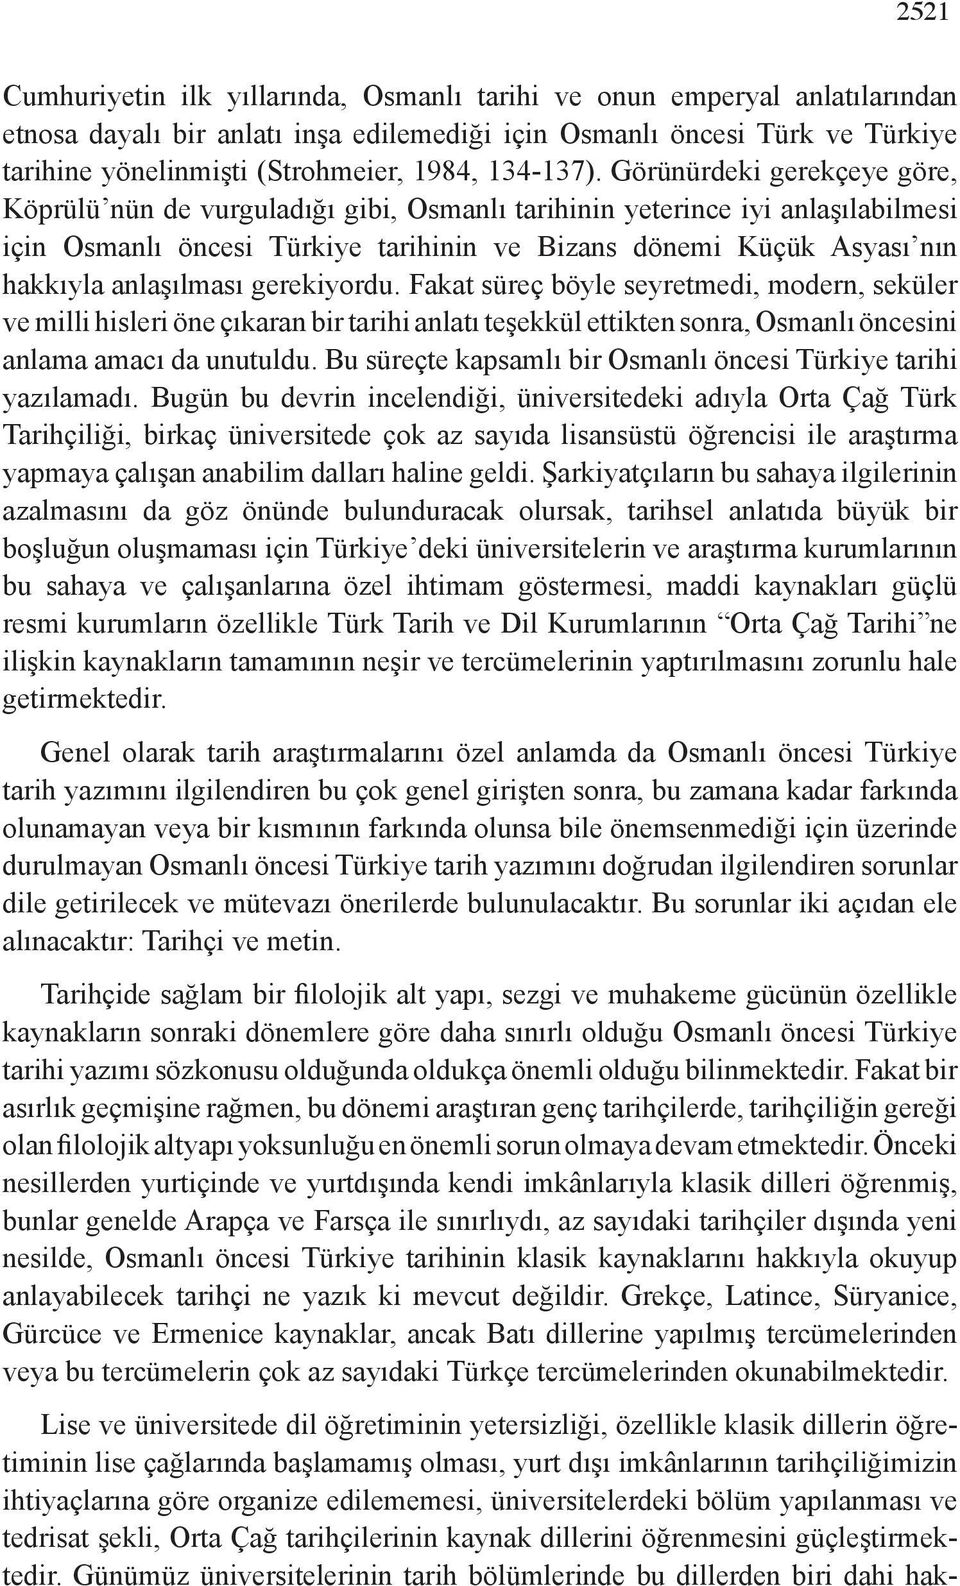 Görünürdeki gerekçeye göre, Köprülü nün de vurguladığı gibi, Osmanlı tarihinin yeterince iyi anlaşılabilmesi için Osmanlı öncesi Türkiye tarihinin ve Bizans dönemi Küçük Asyası nın hakkıyla